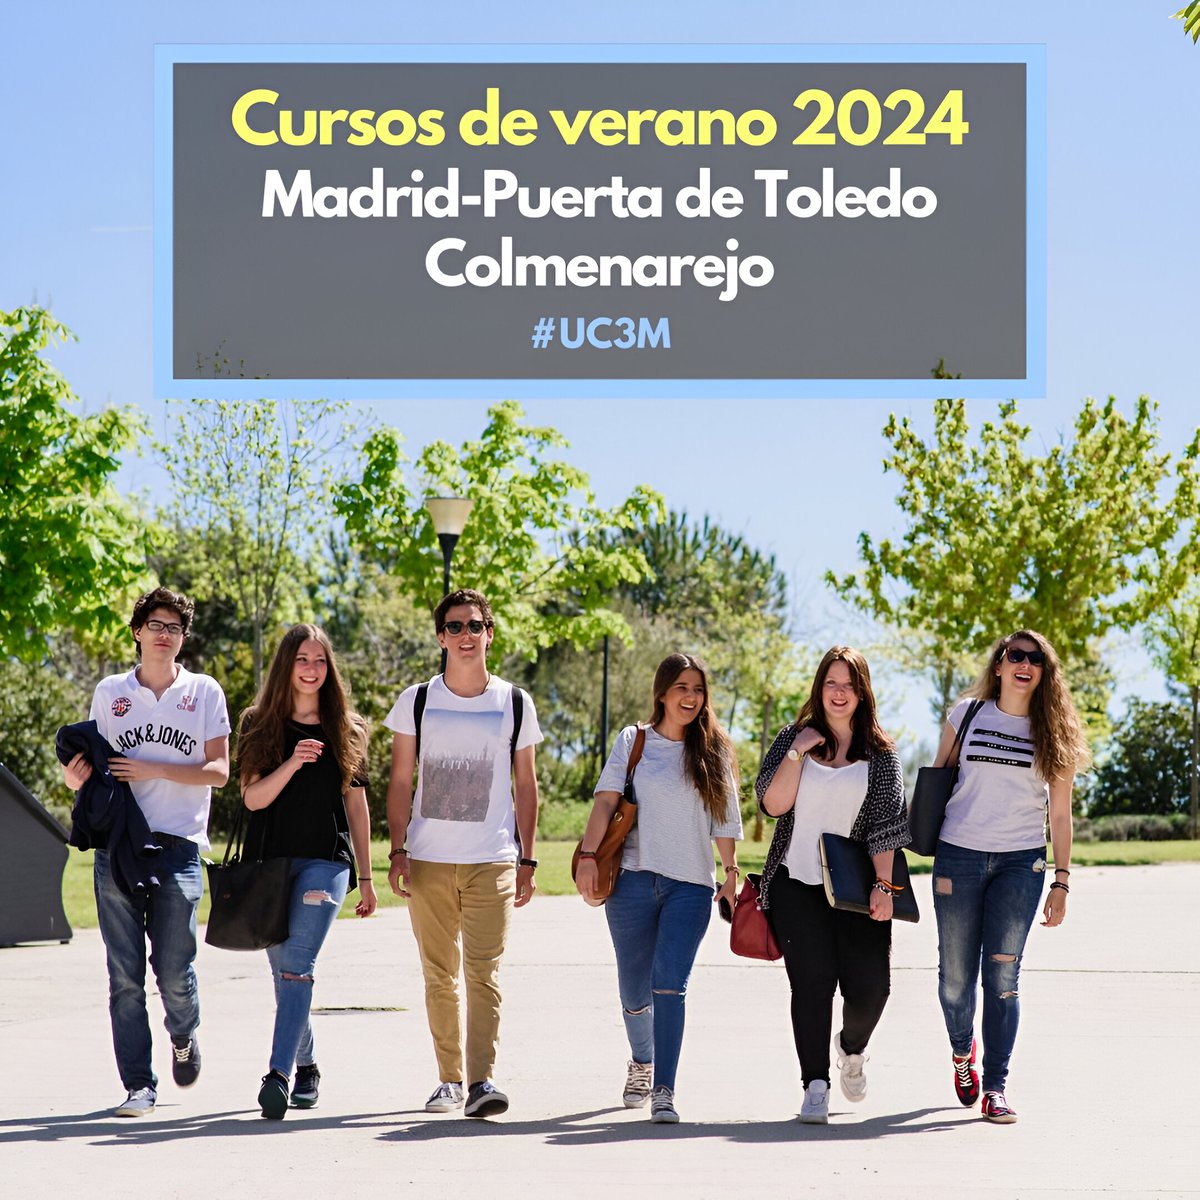 ¡Os presentamos el programa de los Cursos de verano UC3M 2024! Este año se desarrollarán en los campus de Madrid-Puerta de Toledo y de Colmerarejo del 24 ak 28 de junio y del 1 al 5 de julio. ¡Inscríbete! acortar.link/3iOmfn